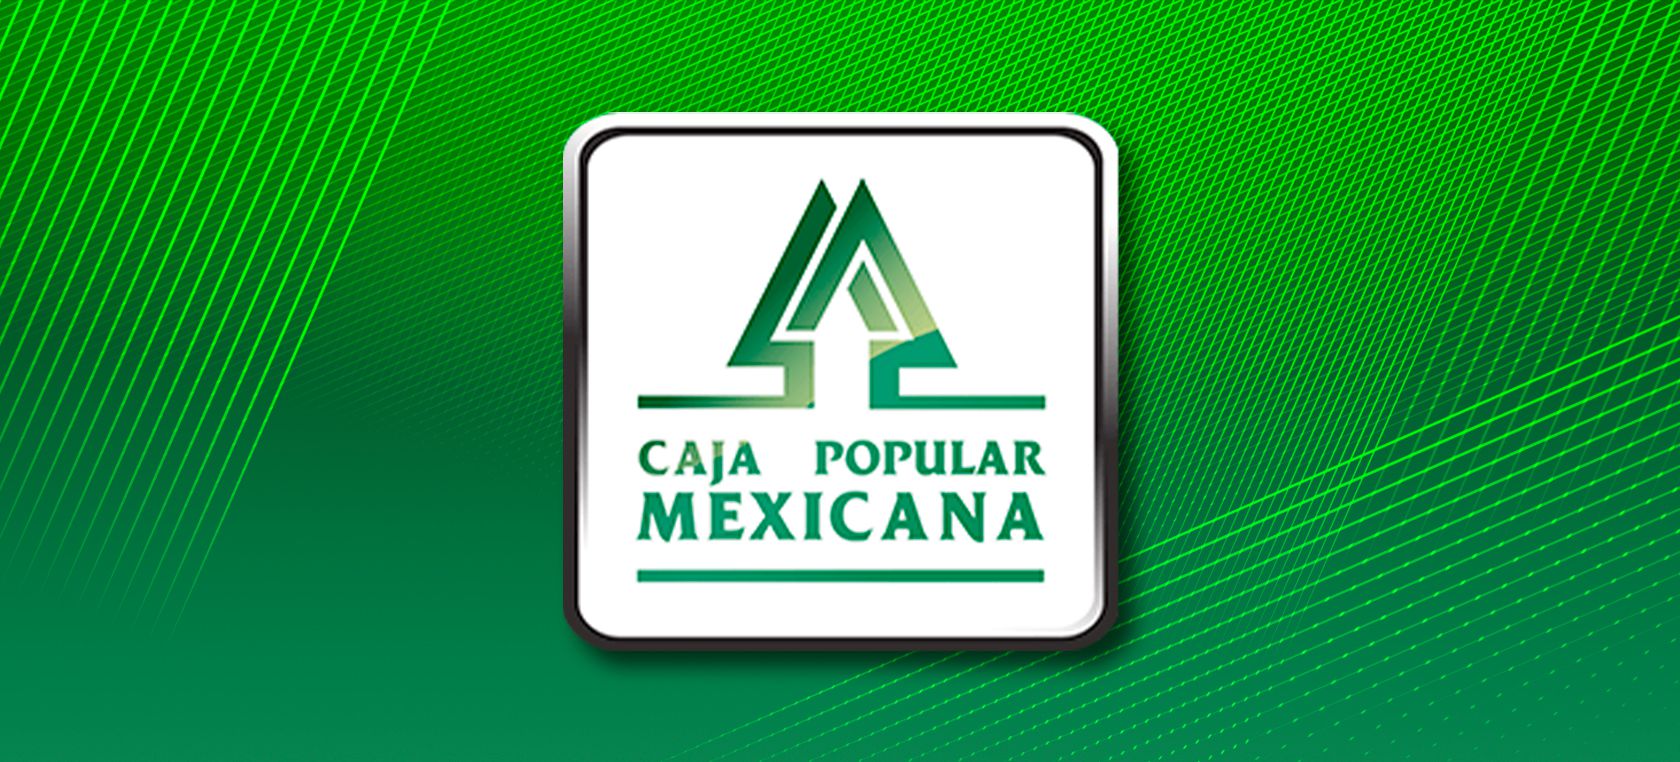 Préstamo Caja Popular Mexicana ¿De qué se trata?